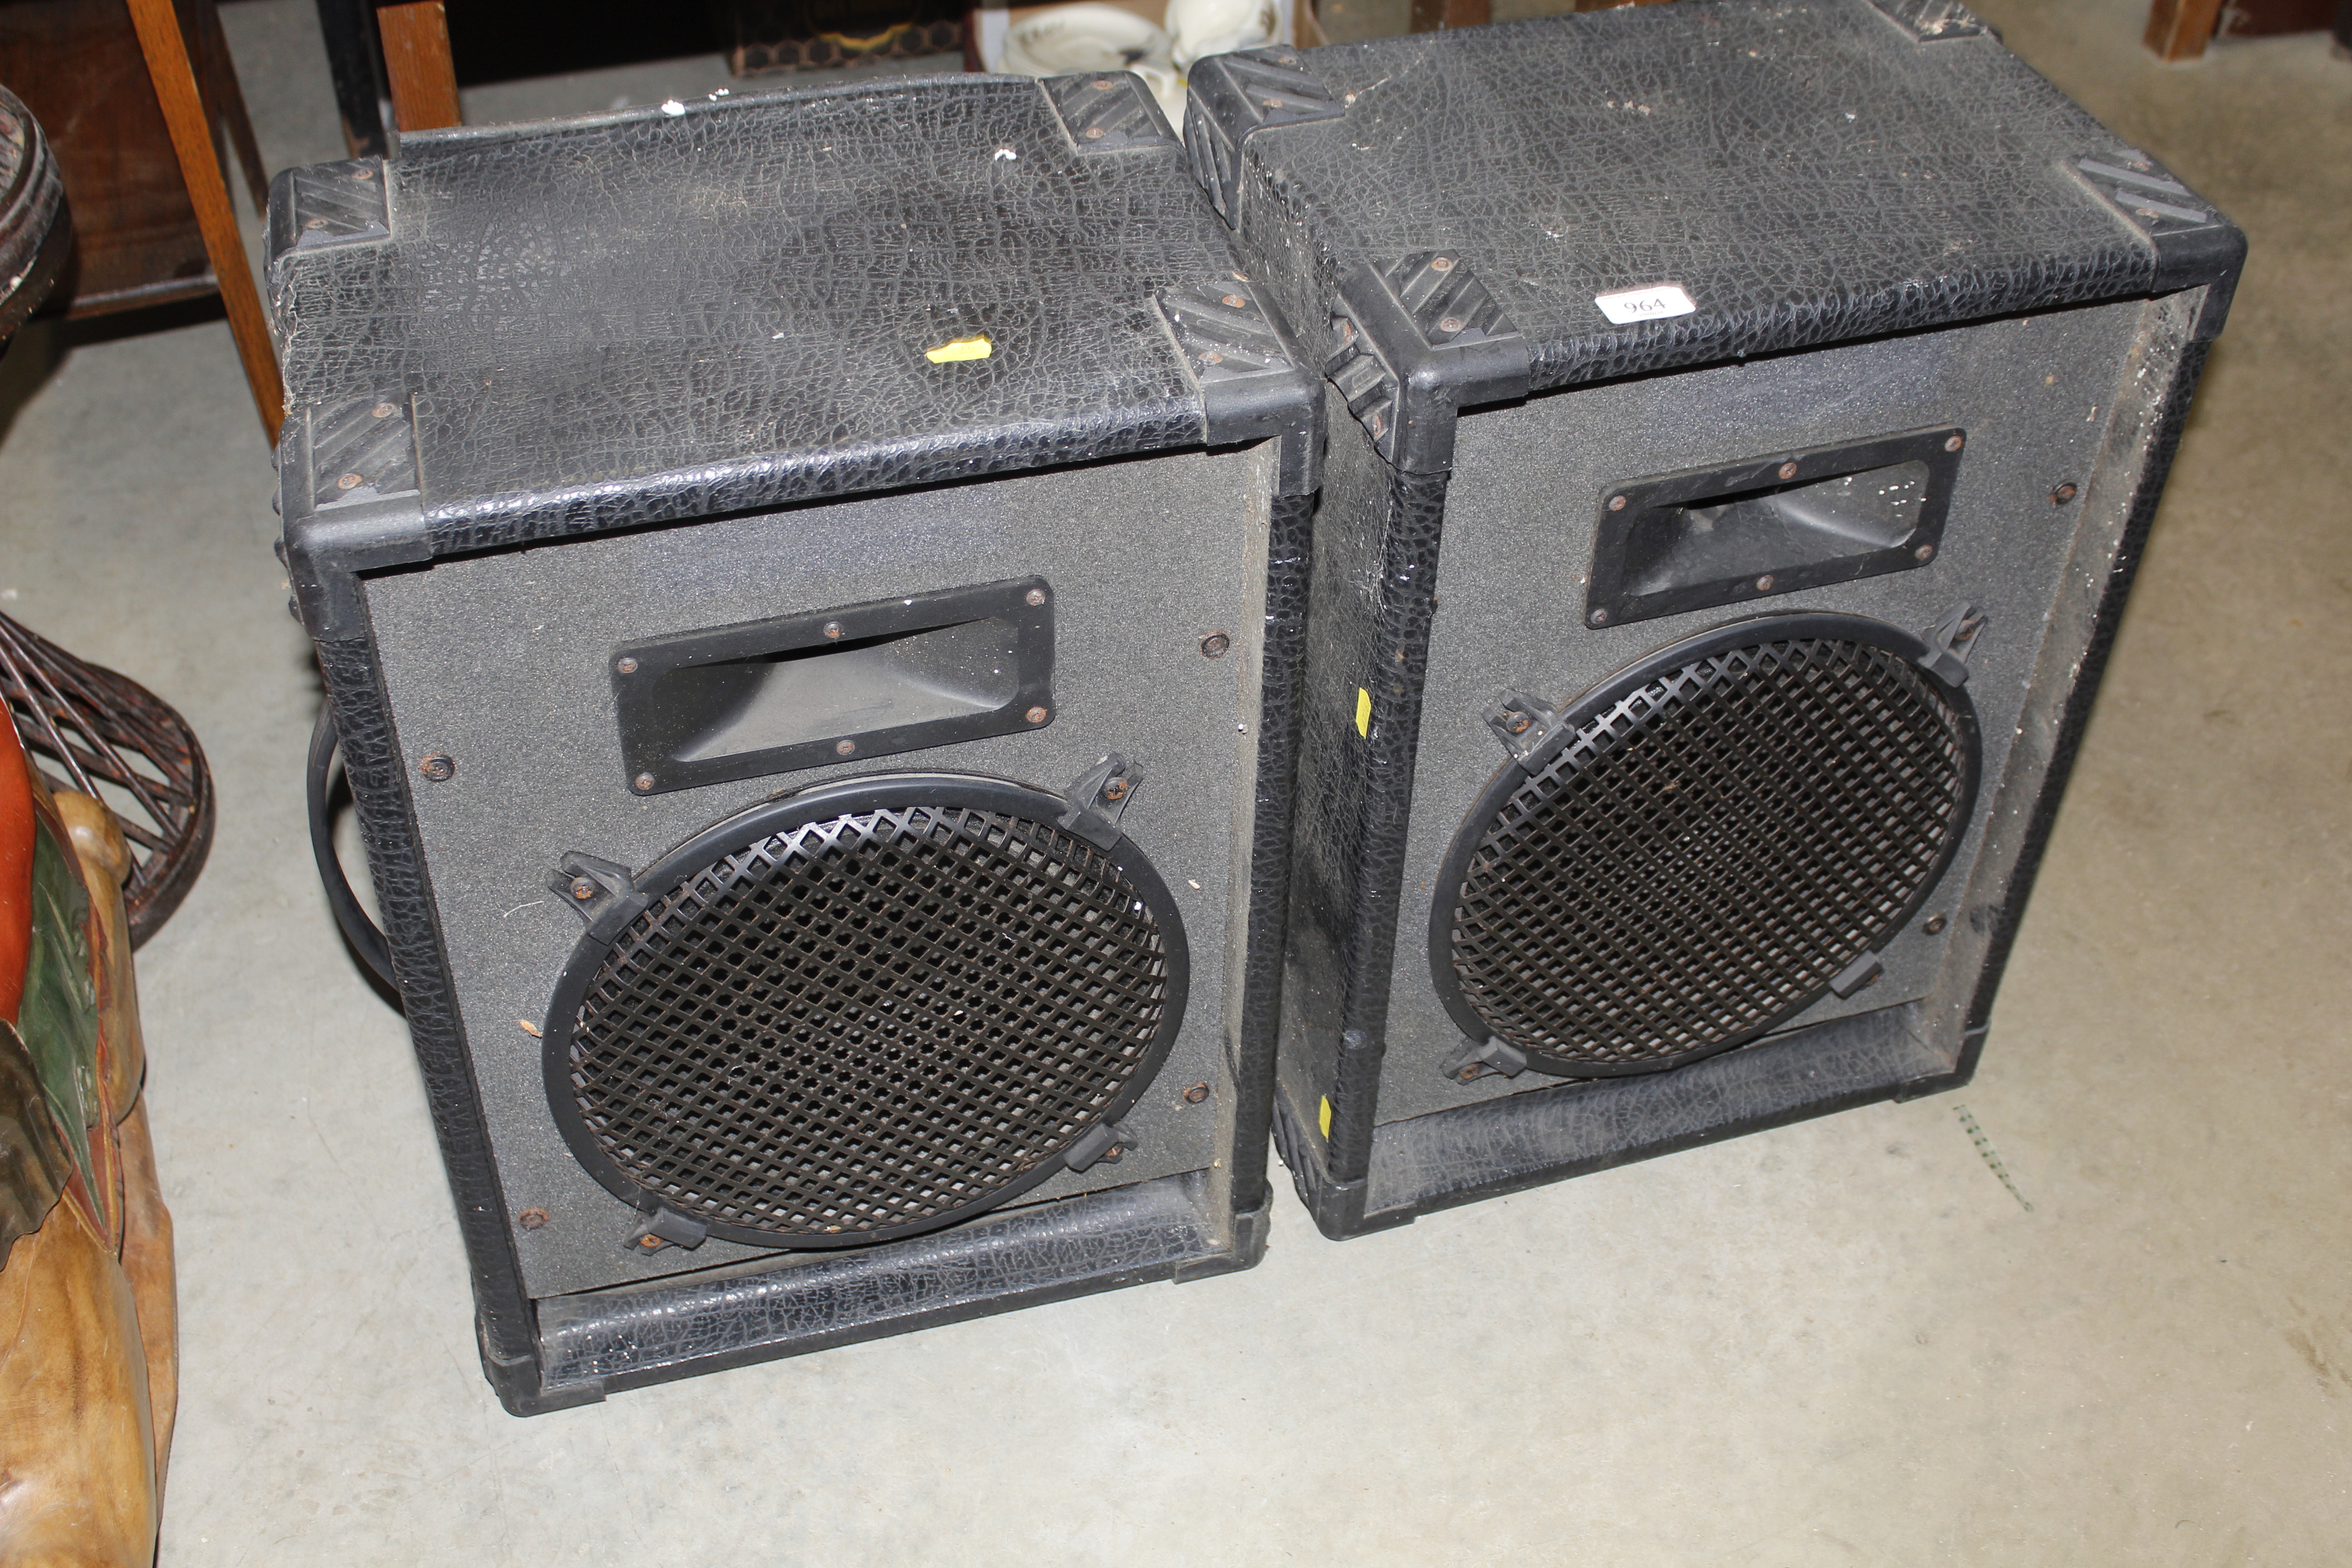 A pair of DJ/PA 500watt speakers